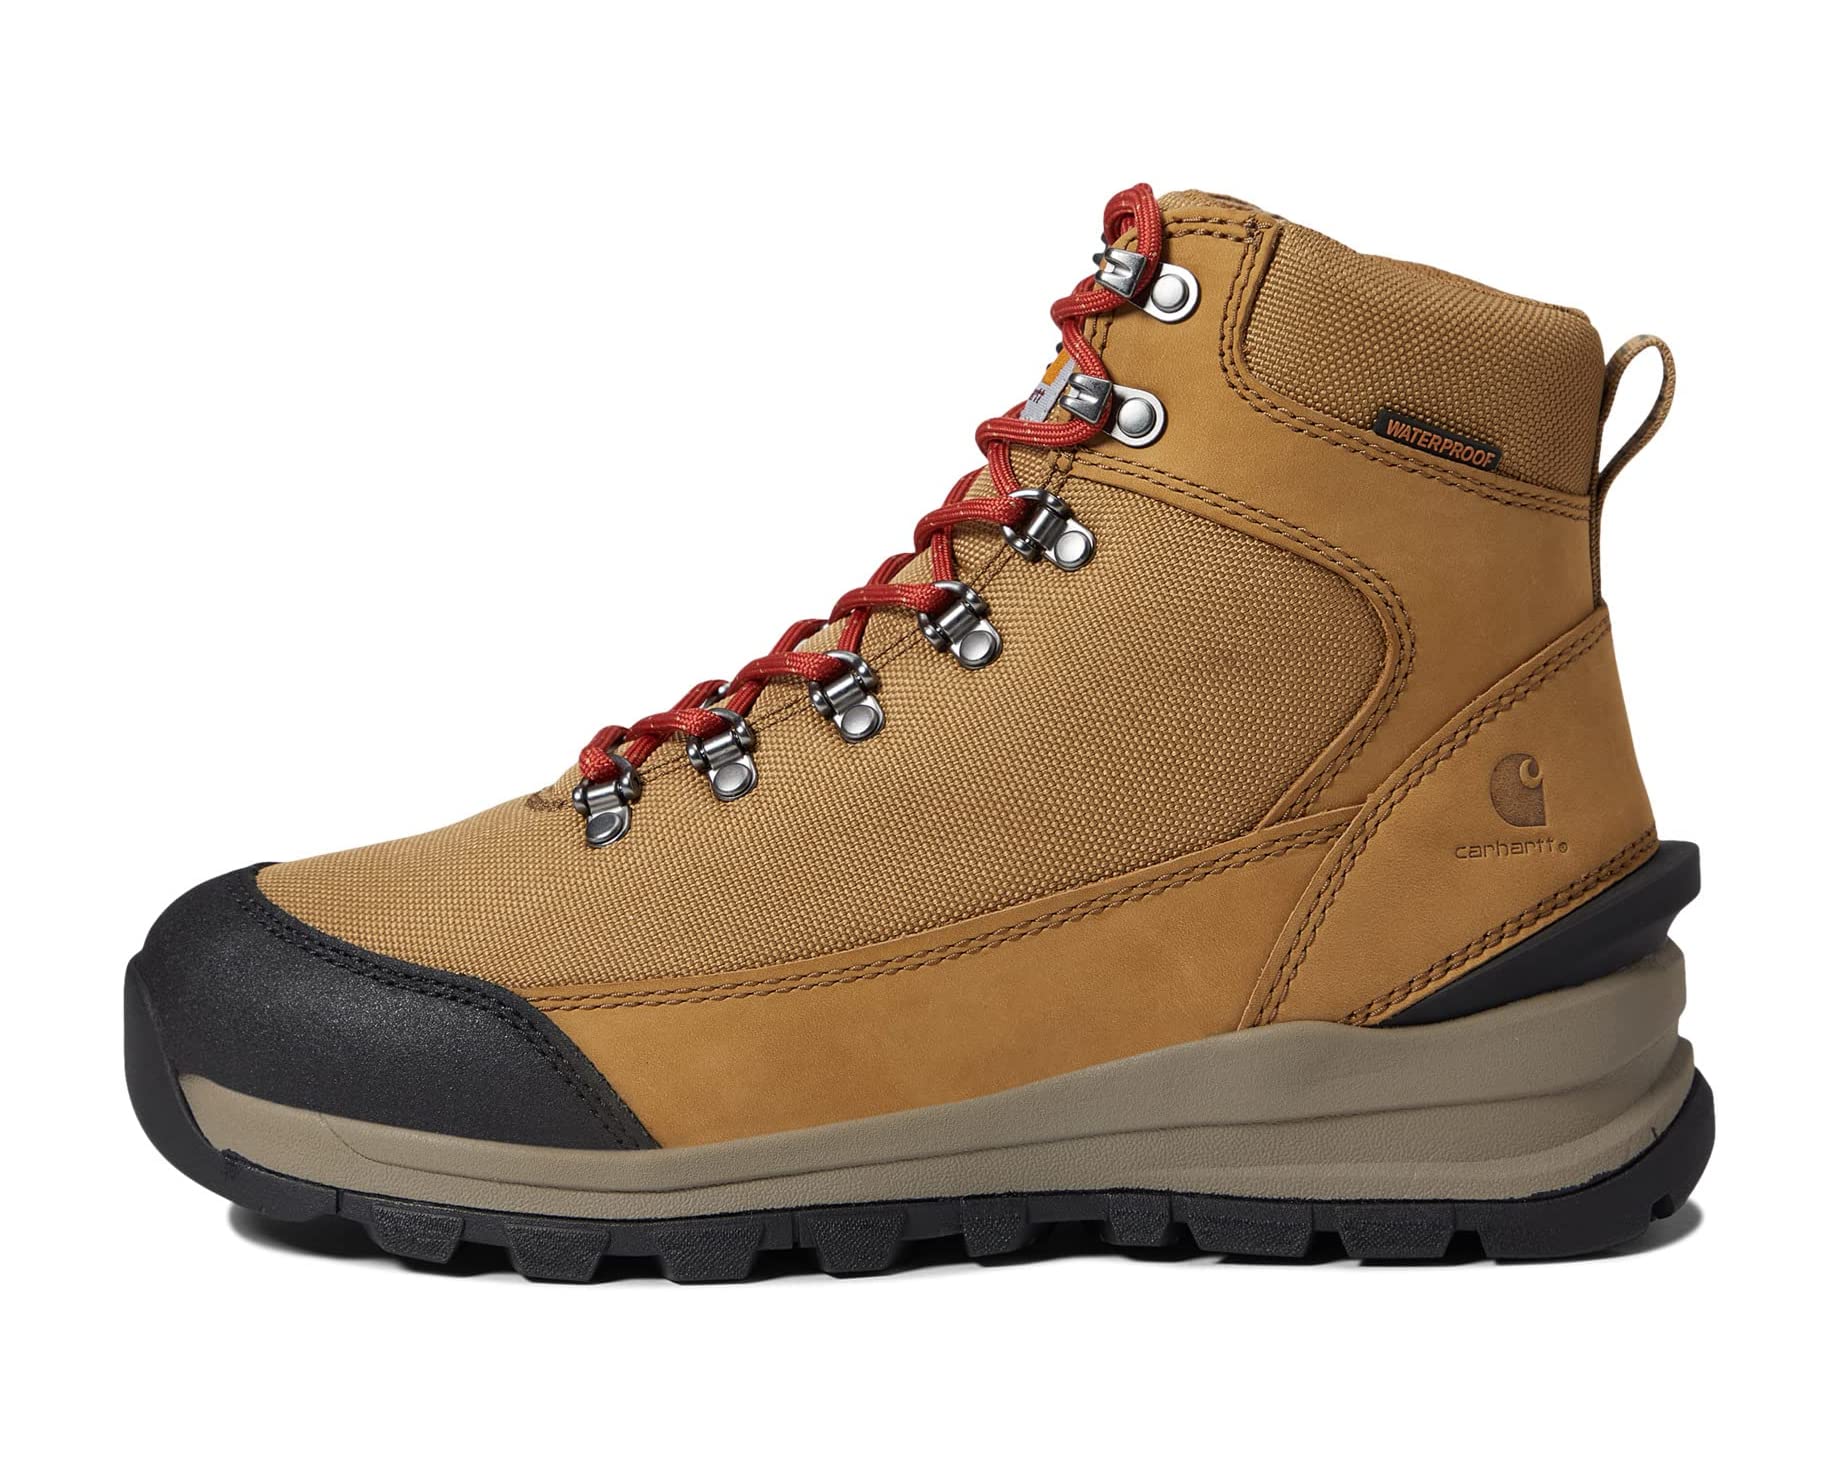 Ботинки Gilmore Waterproof 6 Soft Toe Hiker Carhartt, коричневый